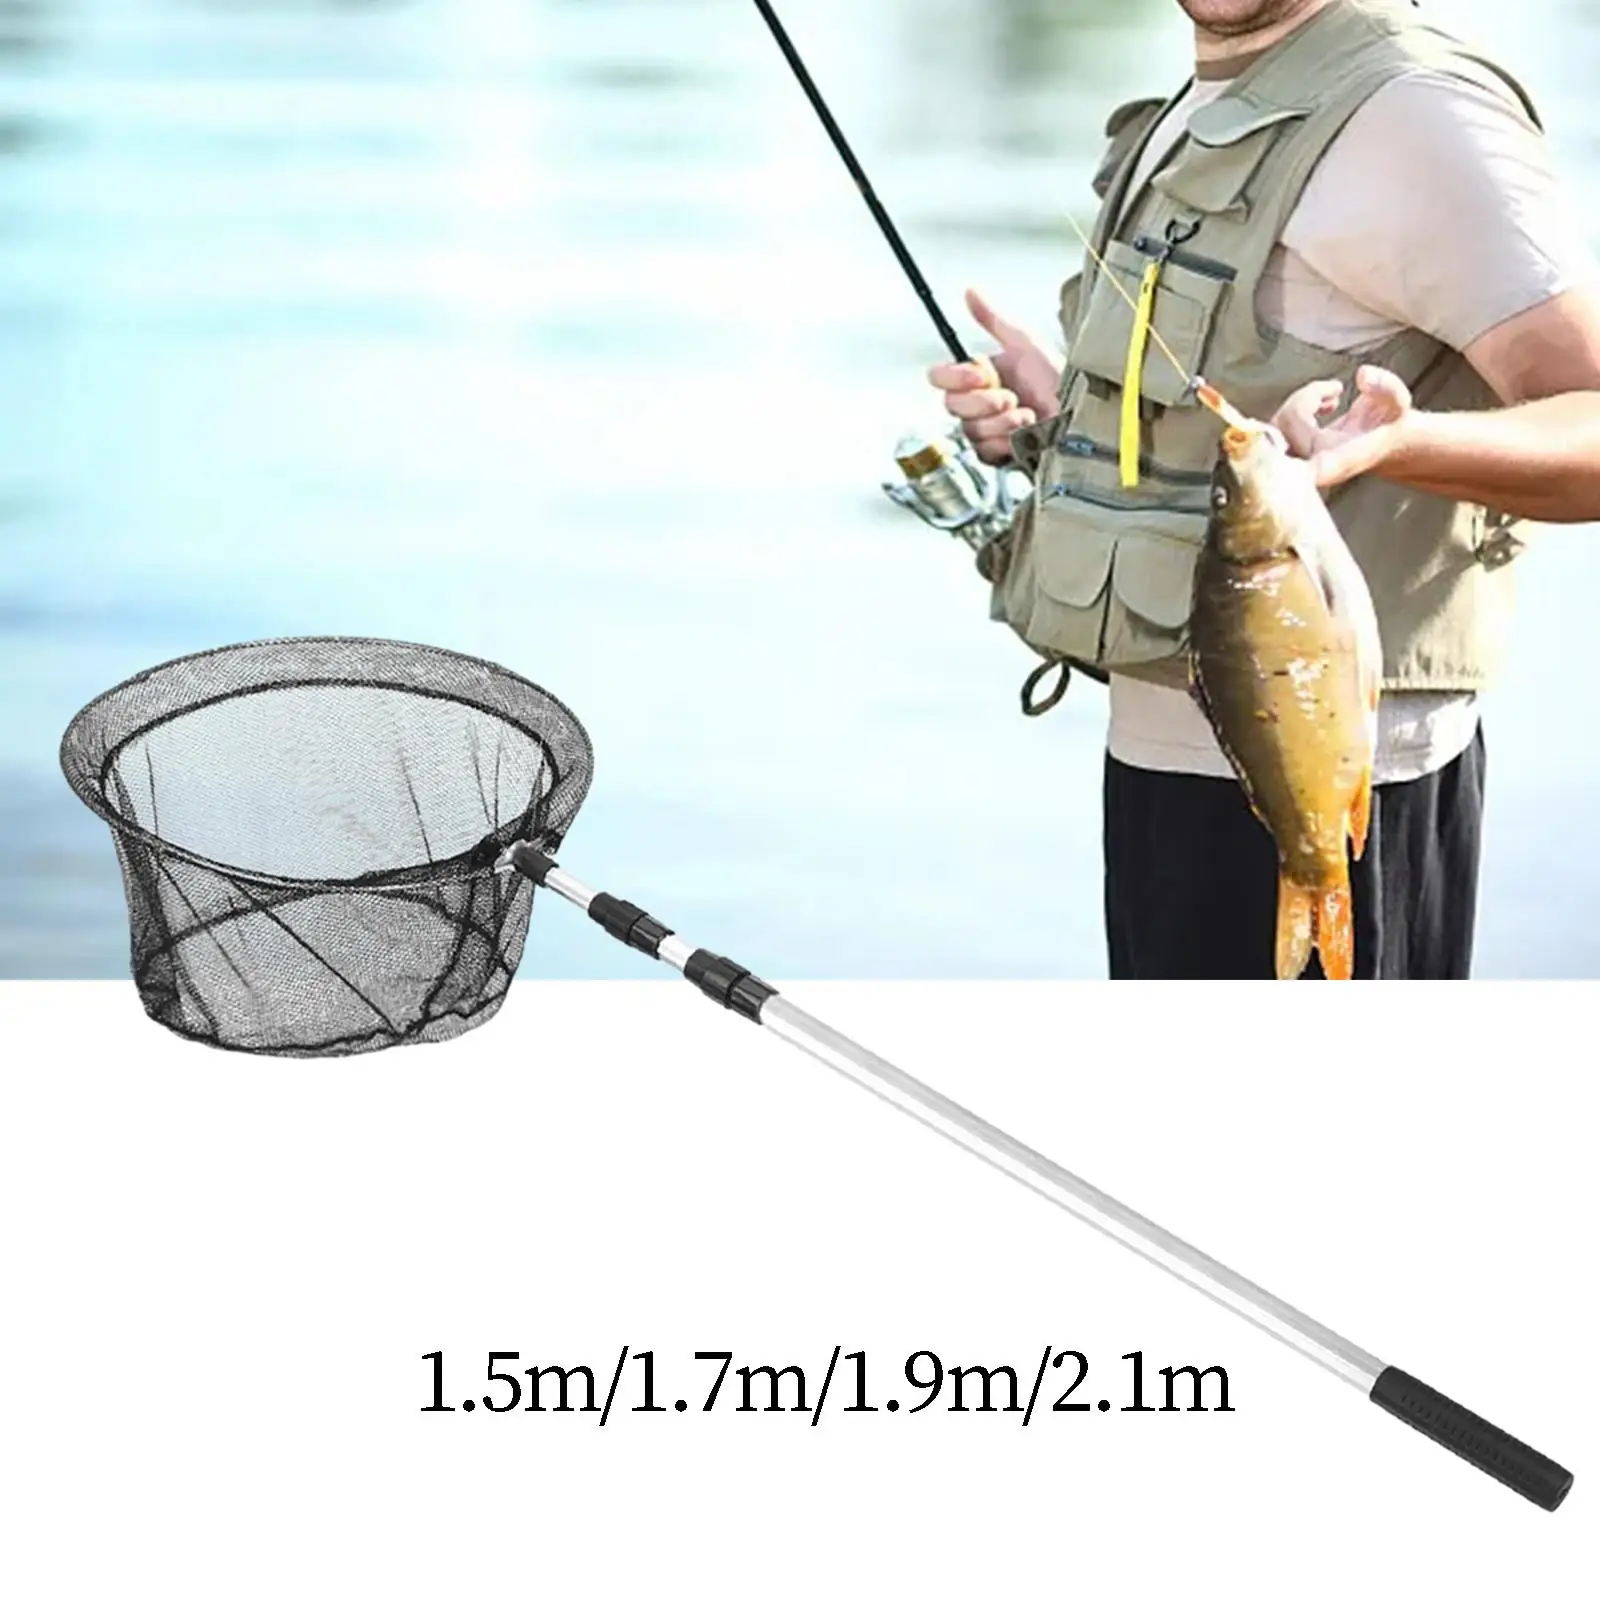 Portable Folding Fishing Landing Net Multipurpose Fishing Tool for Beginners